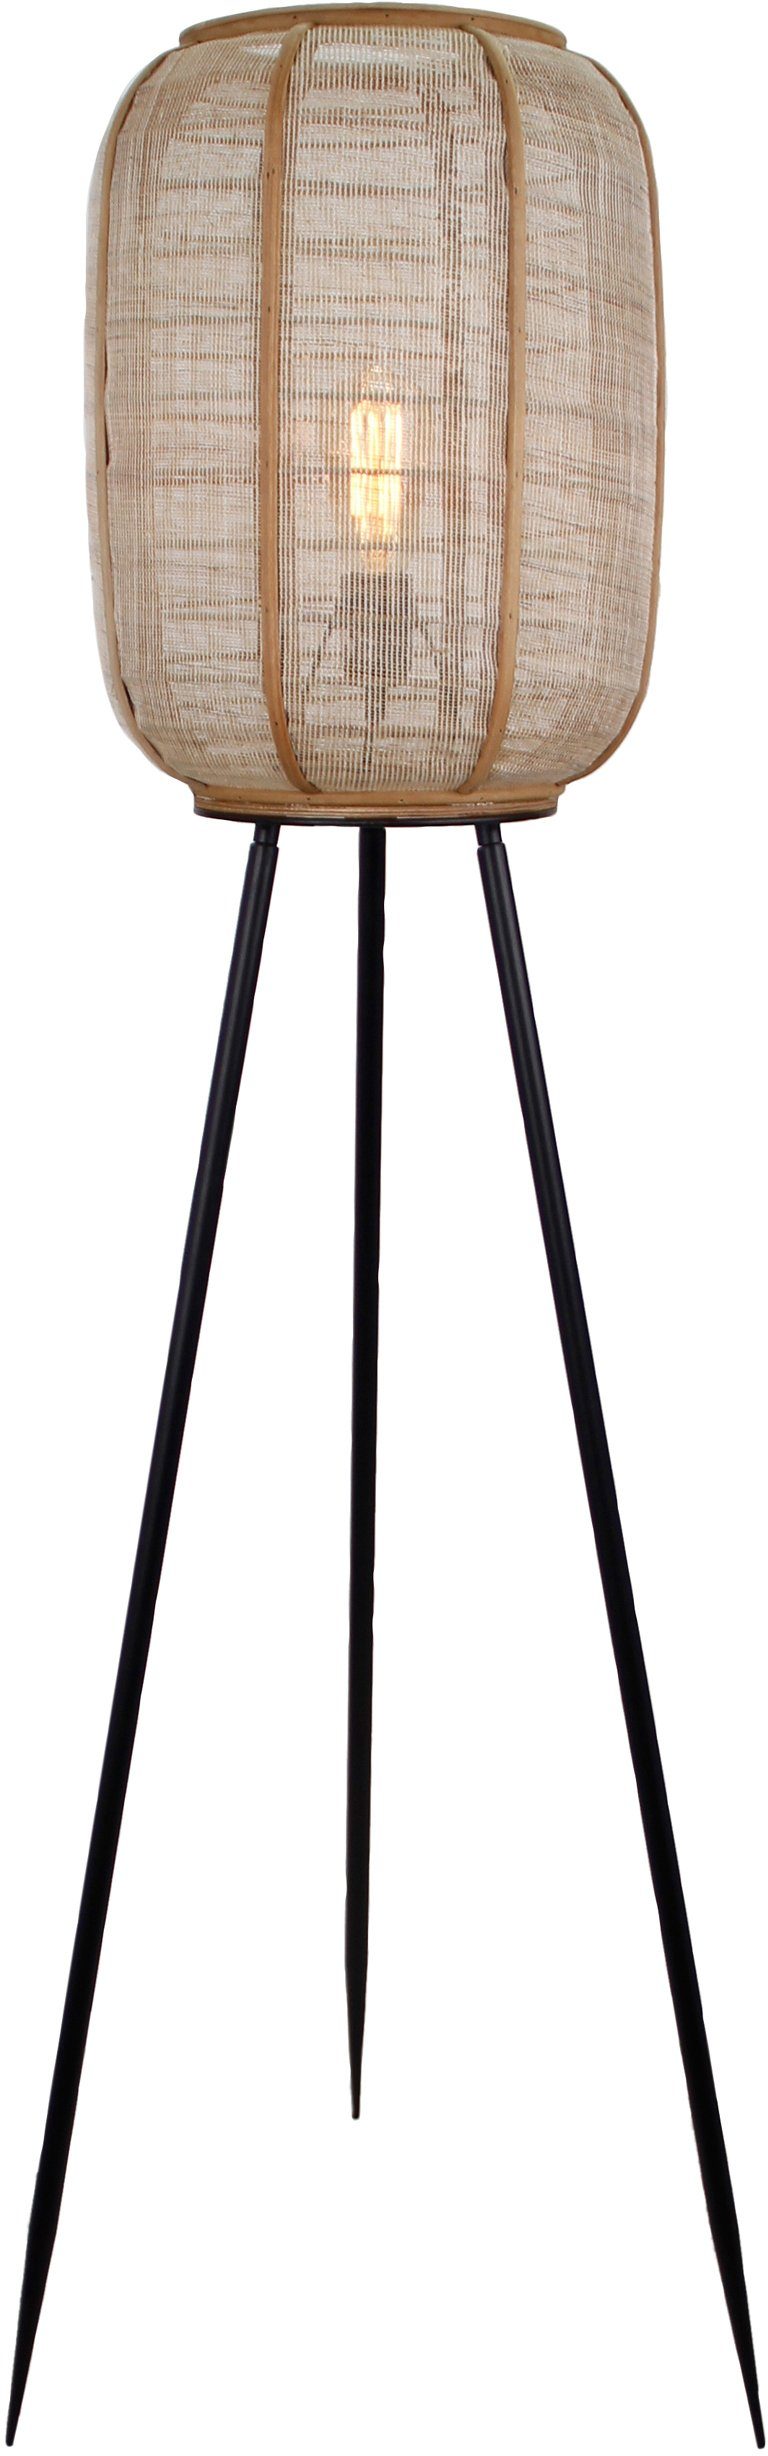 Home affaire Stehlampe »Rouez«, ohne Leuchtmittel, dreibeinige Standleuchte  mit 1,34m Höhe, Schirm aus Textil und Holz